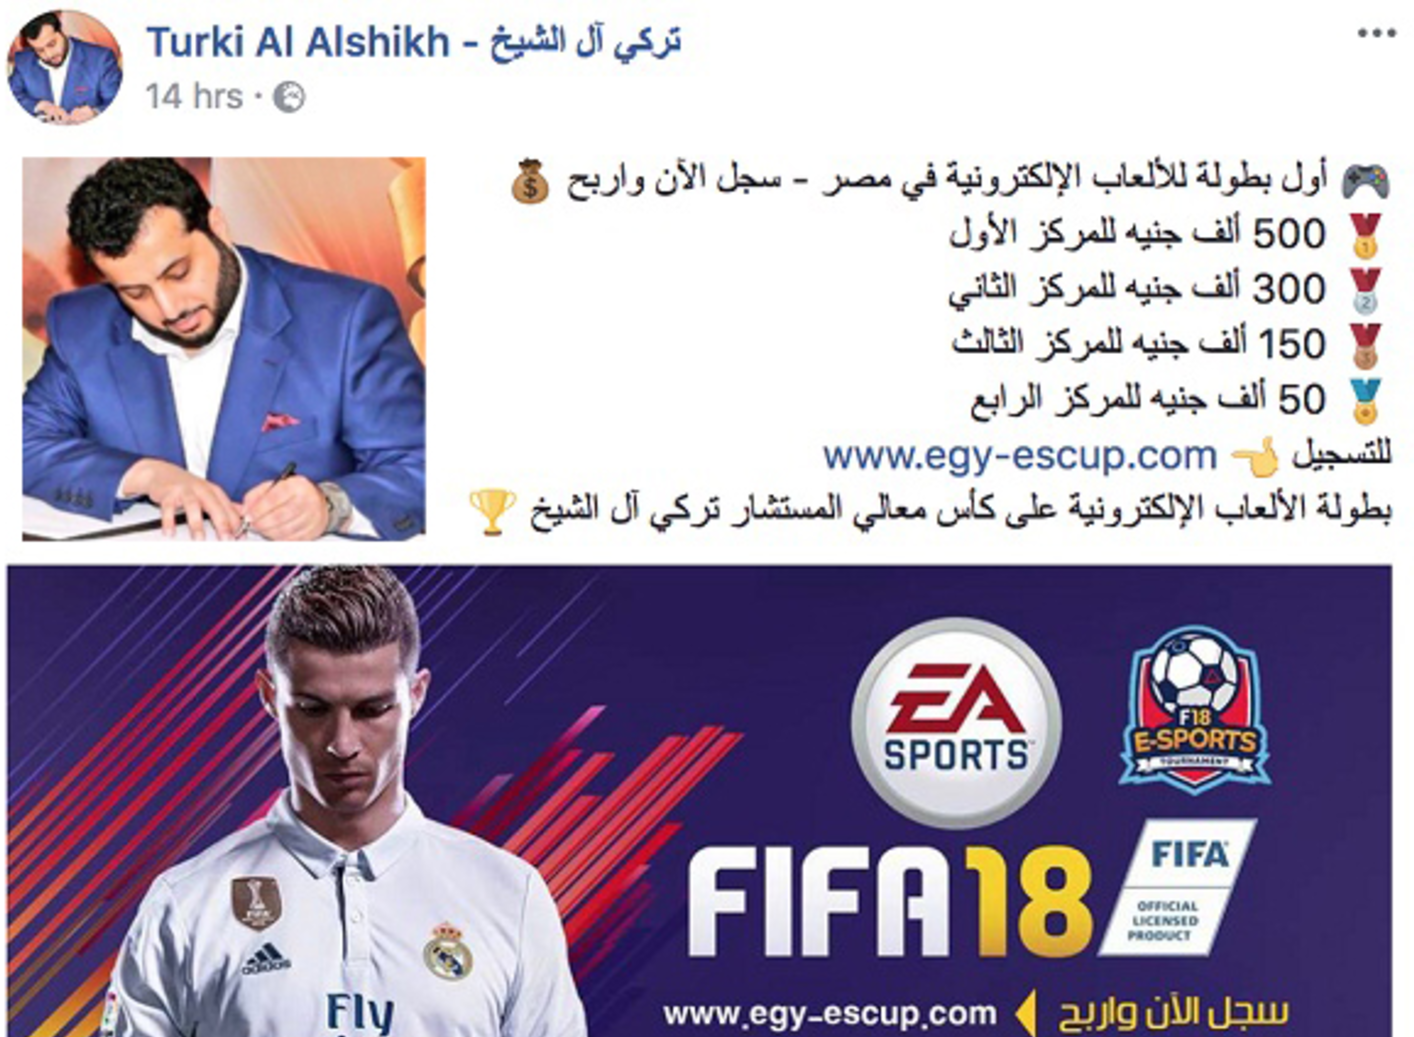 تفاعل مصري كبير مع مسابقة تركي آل الشيخ للألعاب الإلكترونية والجائزة 2 مليون جنيه